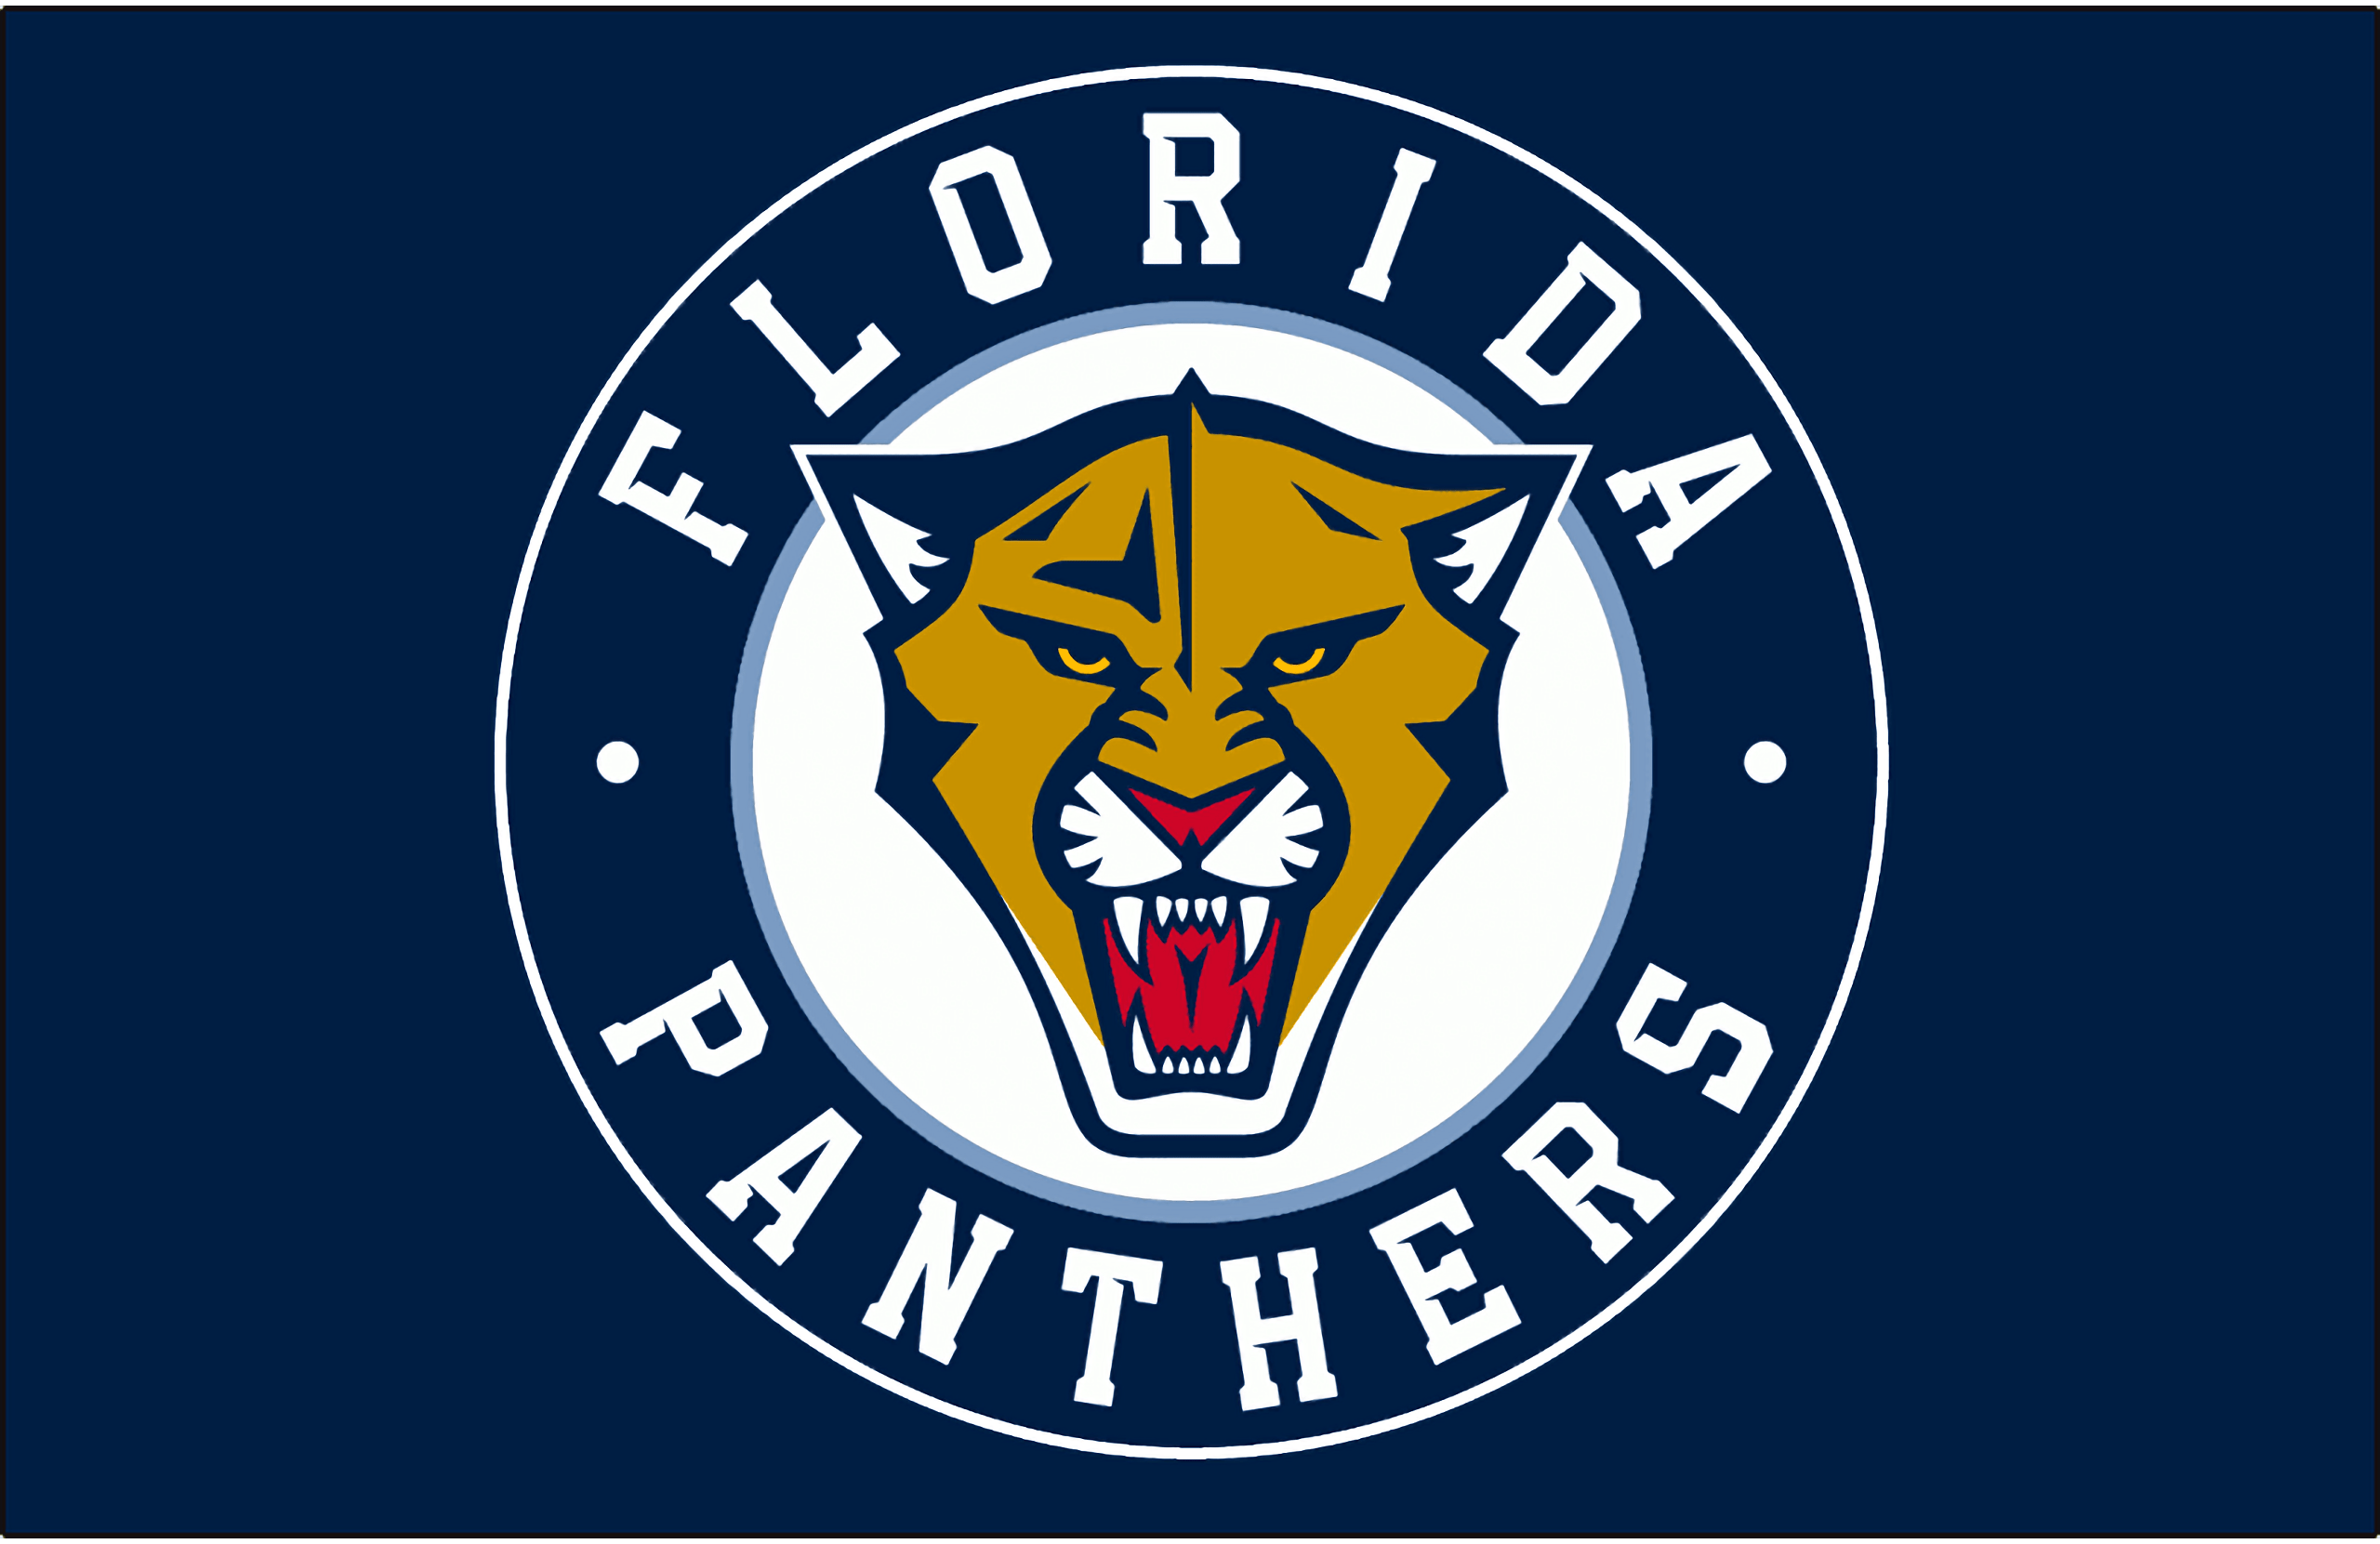 Panthers florida logo wallpapers hockey wallpaper logos jersey alternate sportslogos prev